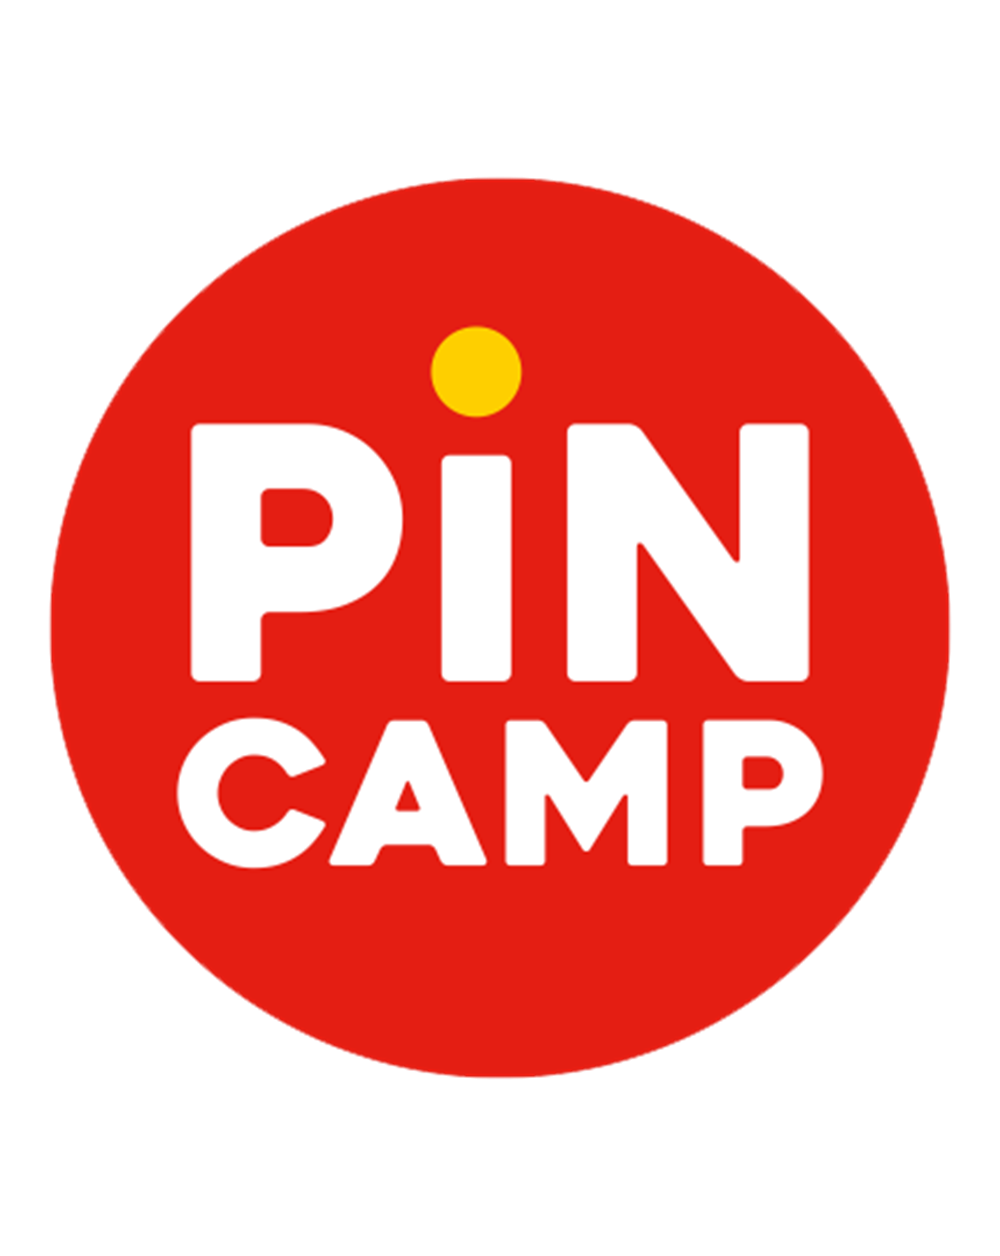 Nun können Sie Ihren Campingplatz auf PiNCAMP vermarkten